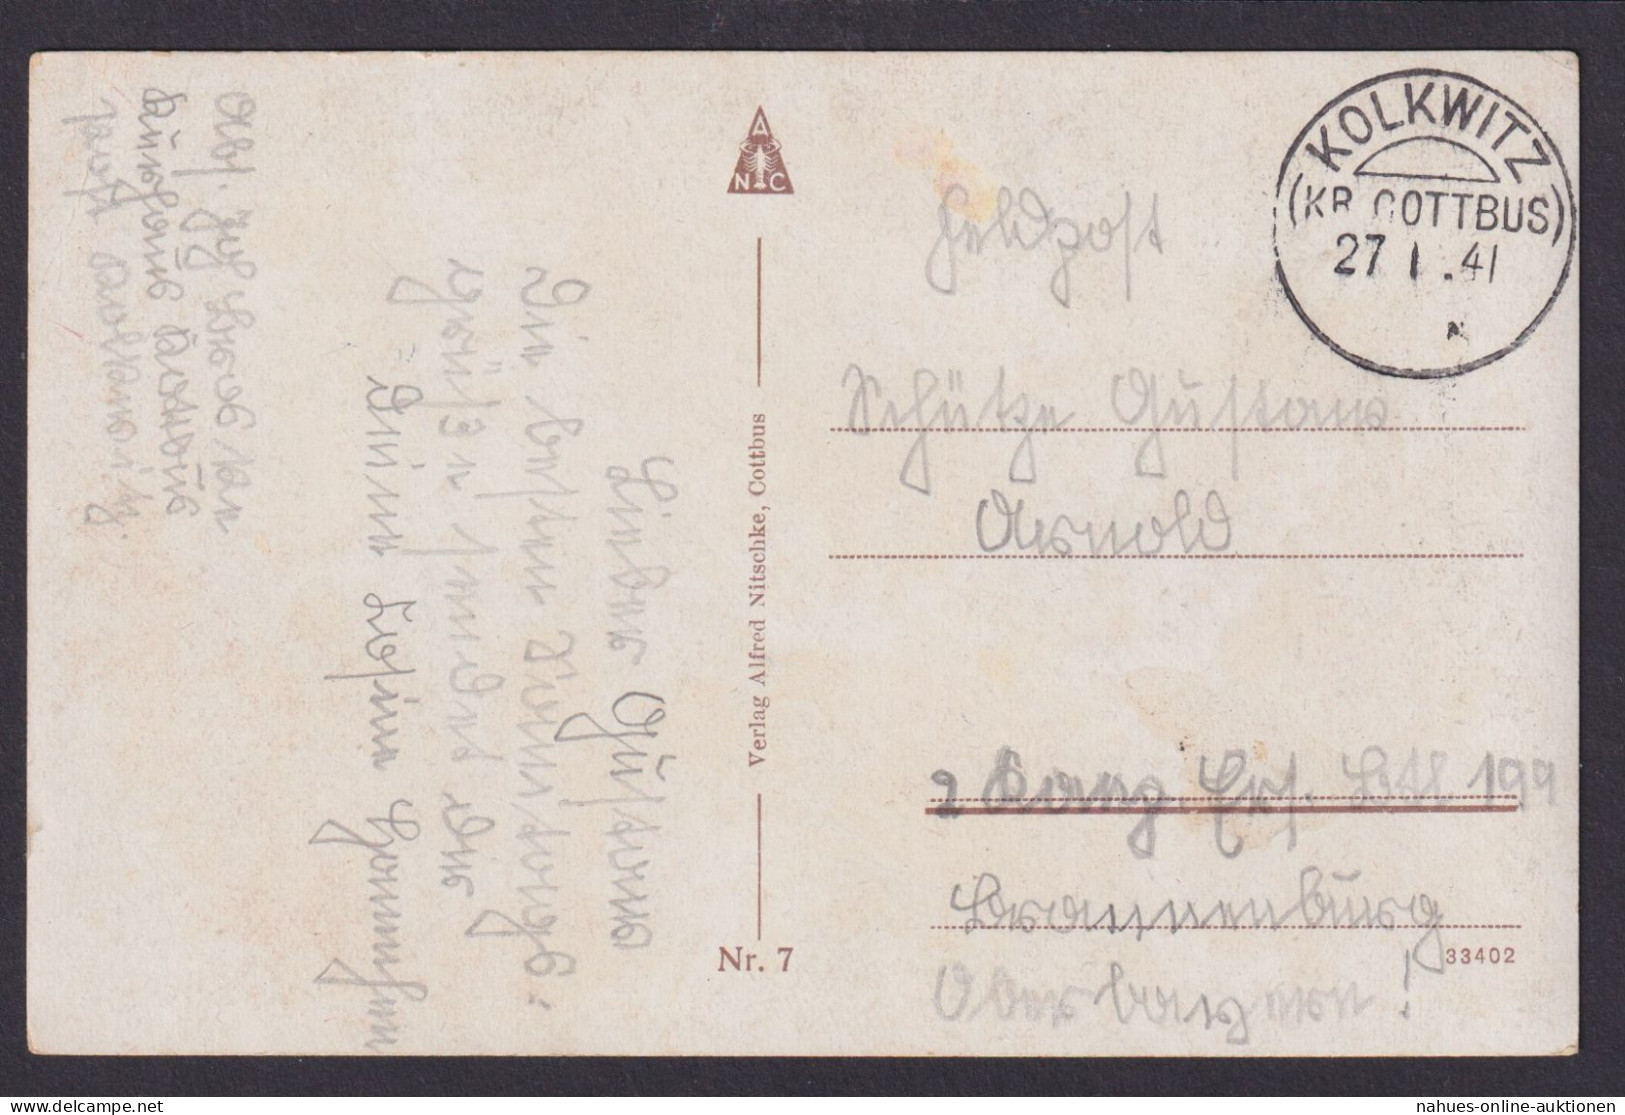 Kolkwitz Kr. Cottbus Brandenburg Deutsches Reich Feldpost Ansichtskarte - Briefe U. Dokumente